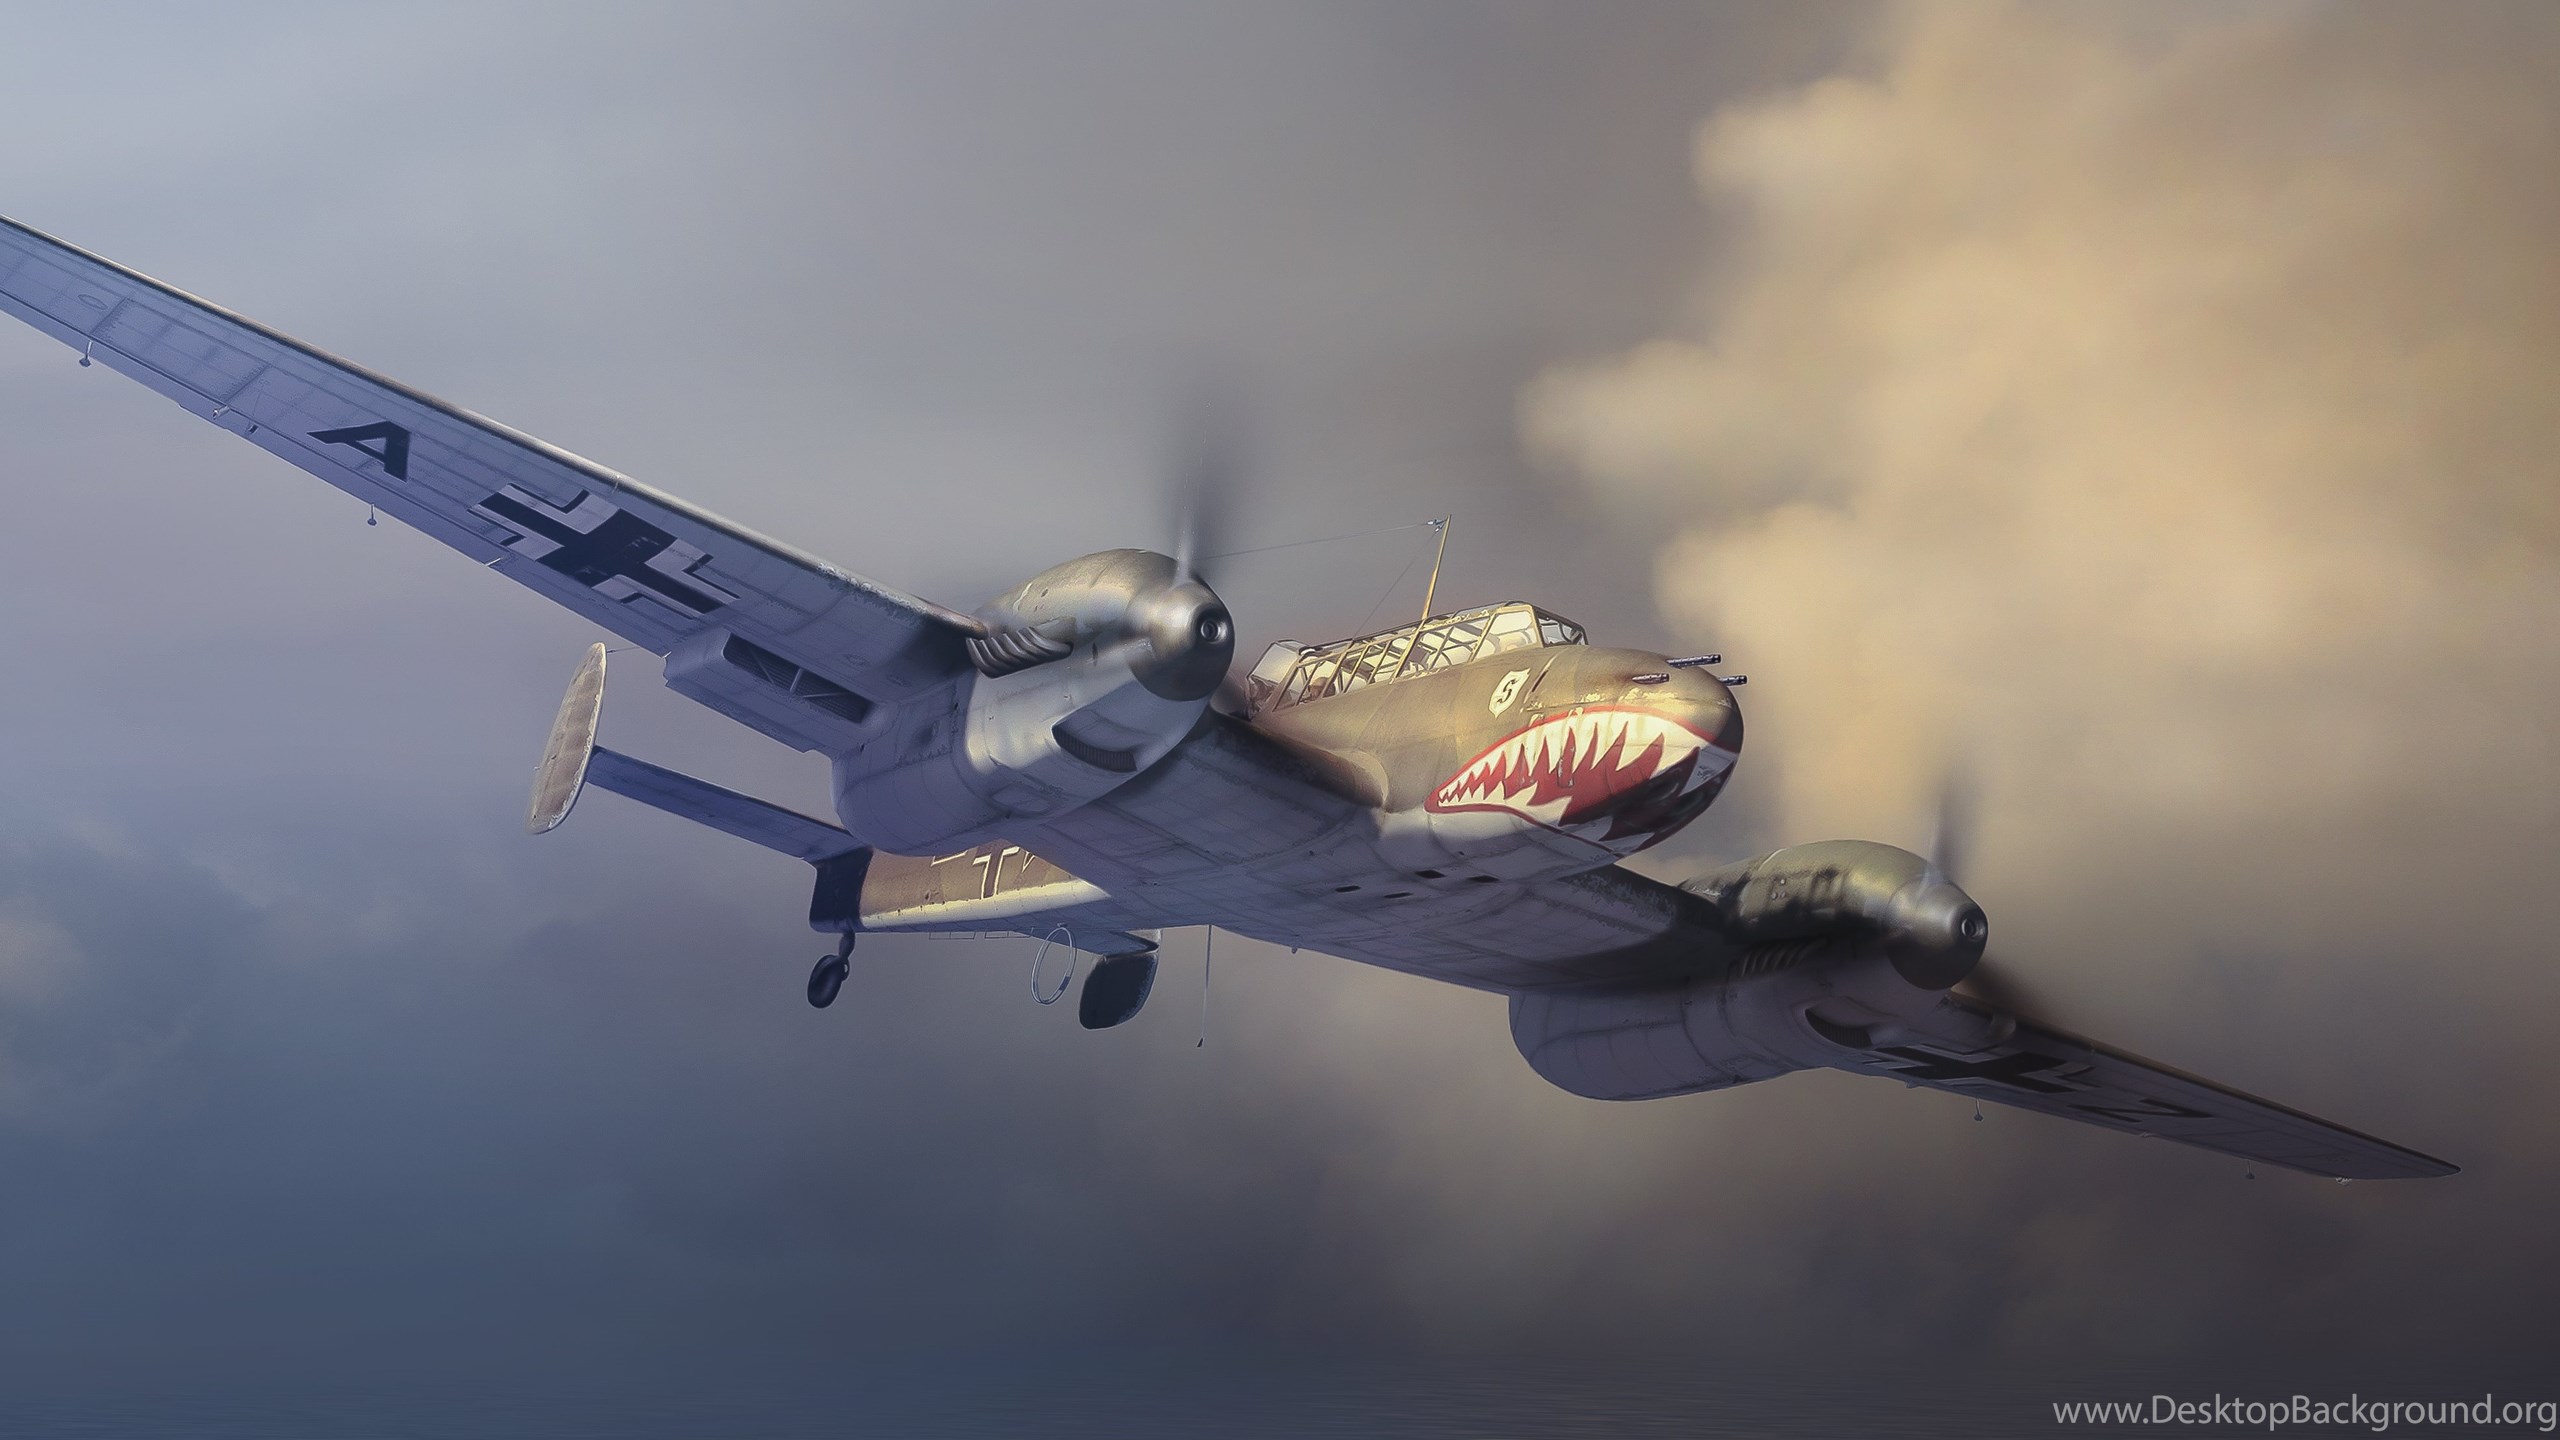 7 Messerschmitt Bf 110 Hd Wallpapers Desktop Background Images, Photos, Reviews